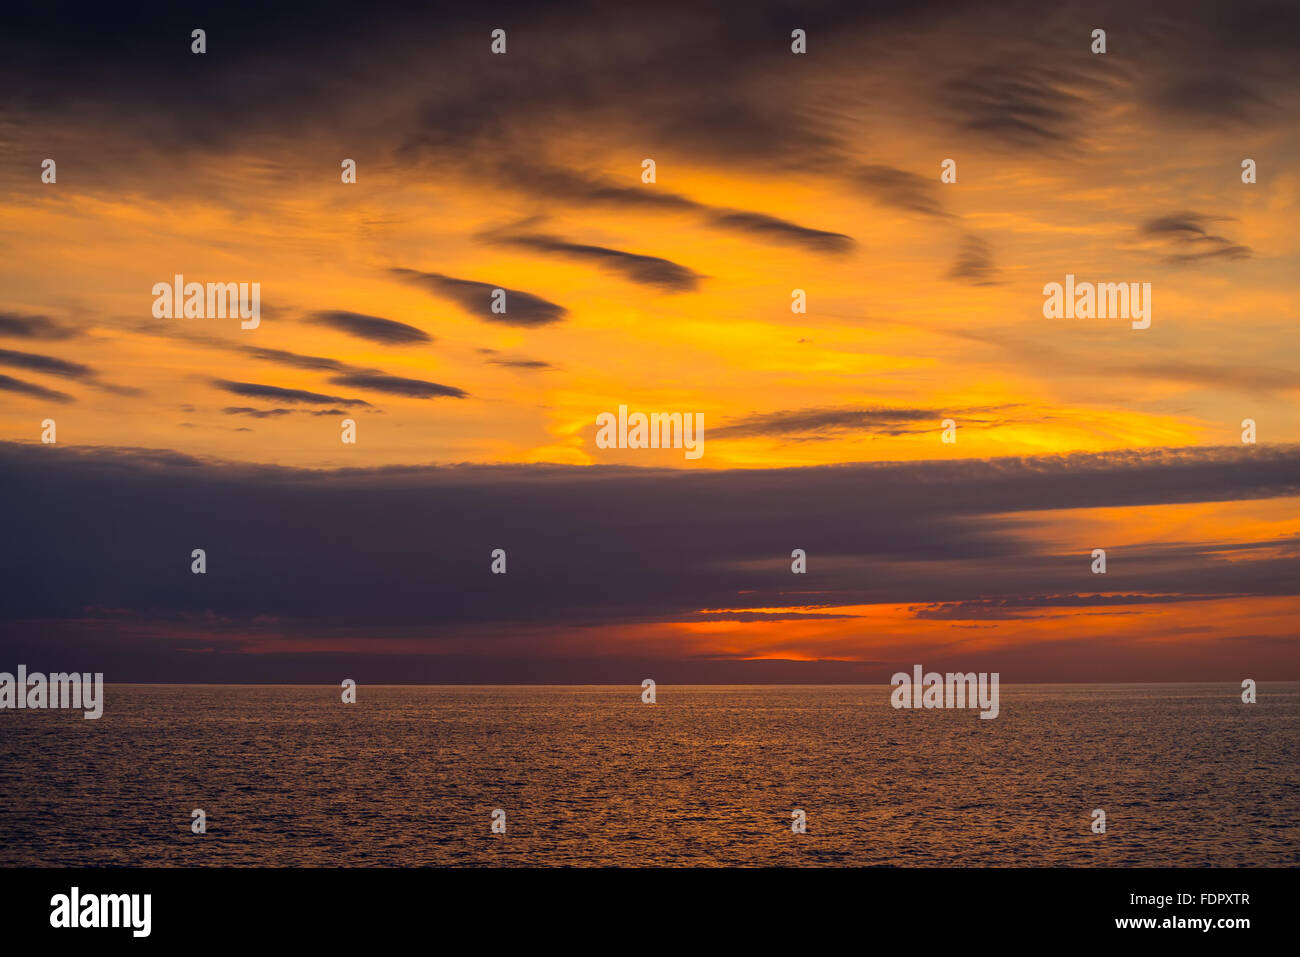 Dramatischen Sonnenuntergang über dem Meer. South Australia. Farbe toning und Crossentwicklung Effekte angewendet werden. Stockfoto